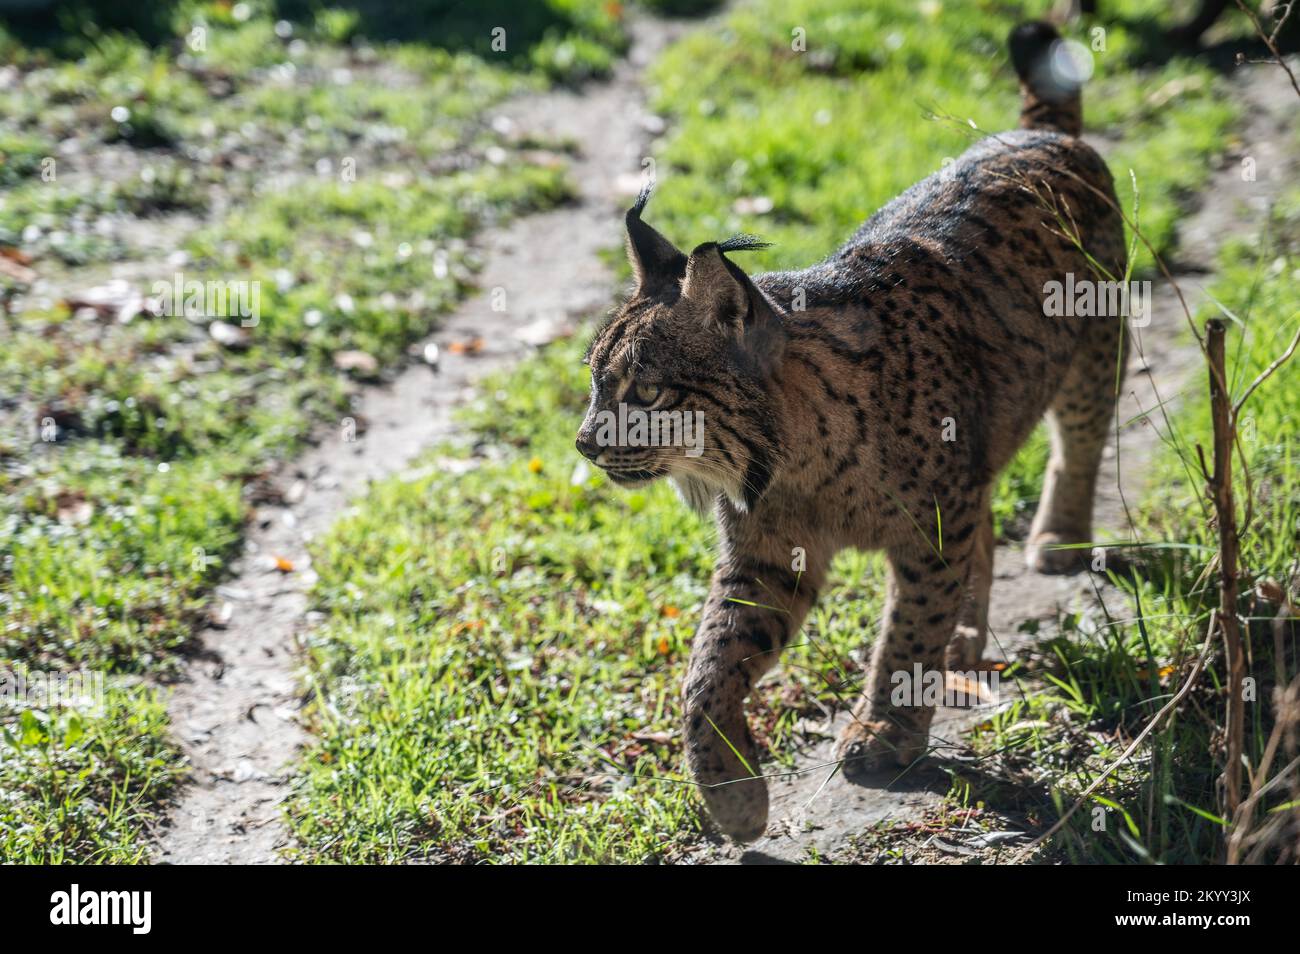 Un lynx ibérique (Lynx pardinus), espèce sauvage de chat endémique de la péninsule ibérique, est classé en voie de disparition Banque D'Images